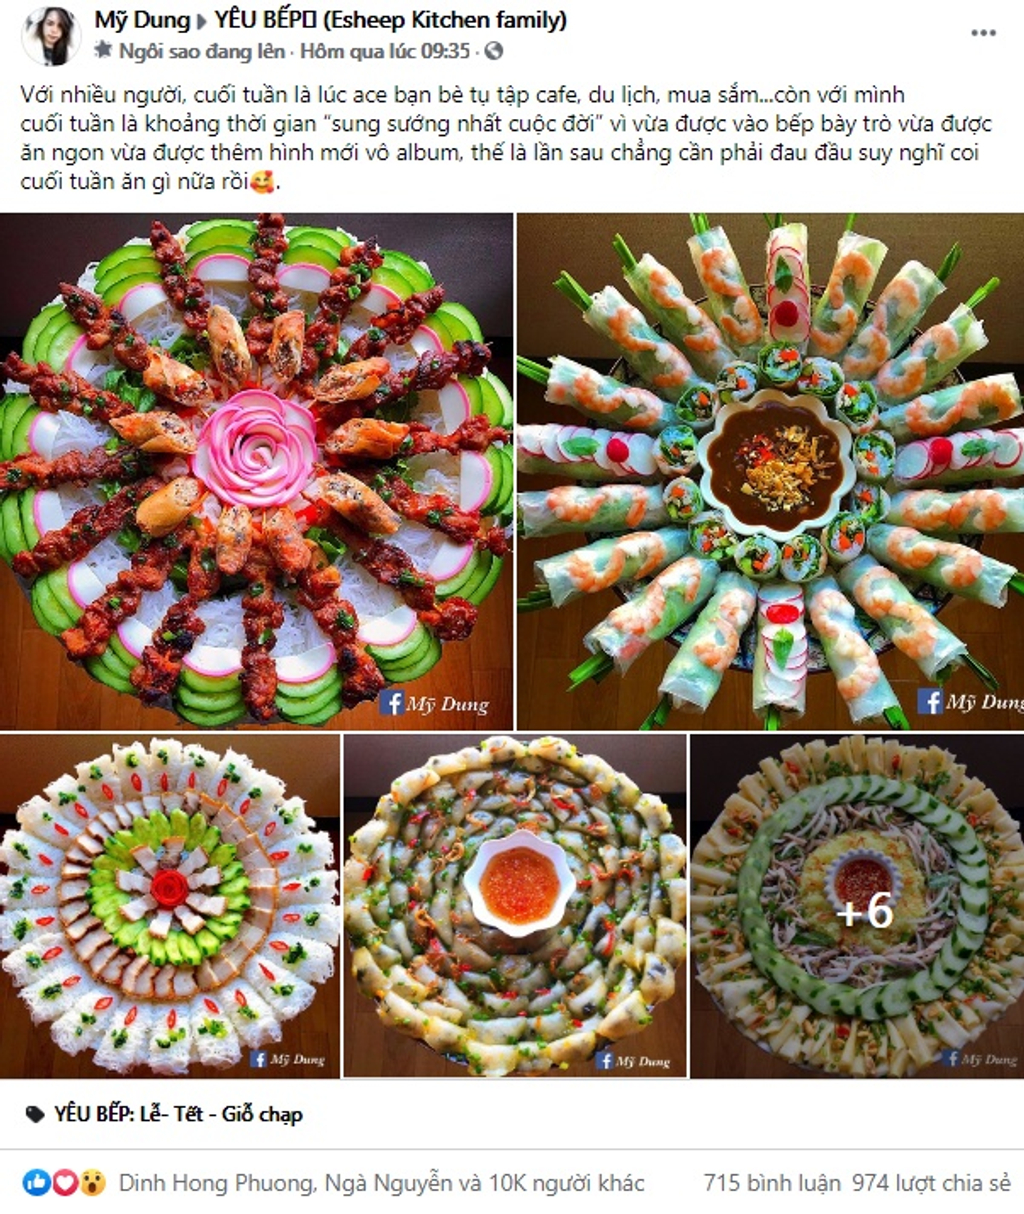 Hai bài chia sẻ về mâm cơm siêu đẹp của Mỹ Dung nhận được 10.000 - 20.000 lượt likes.